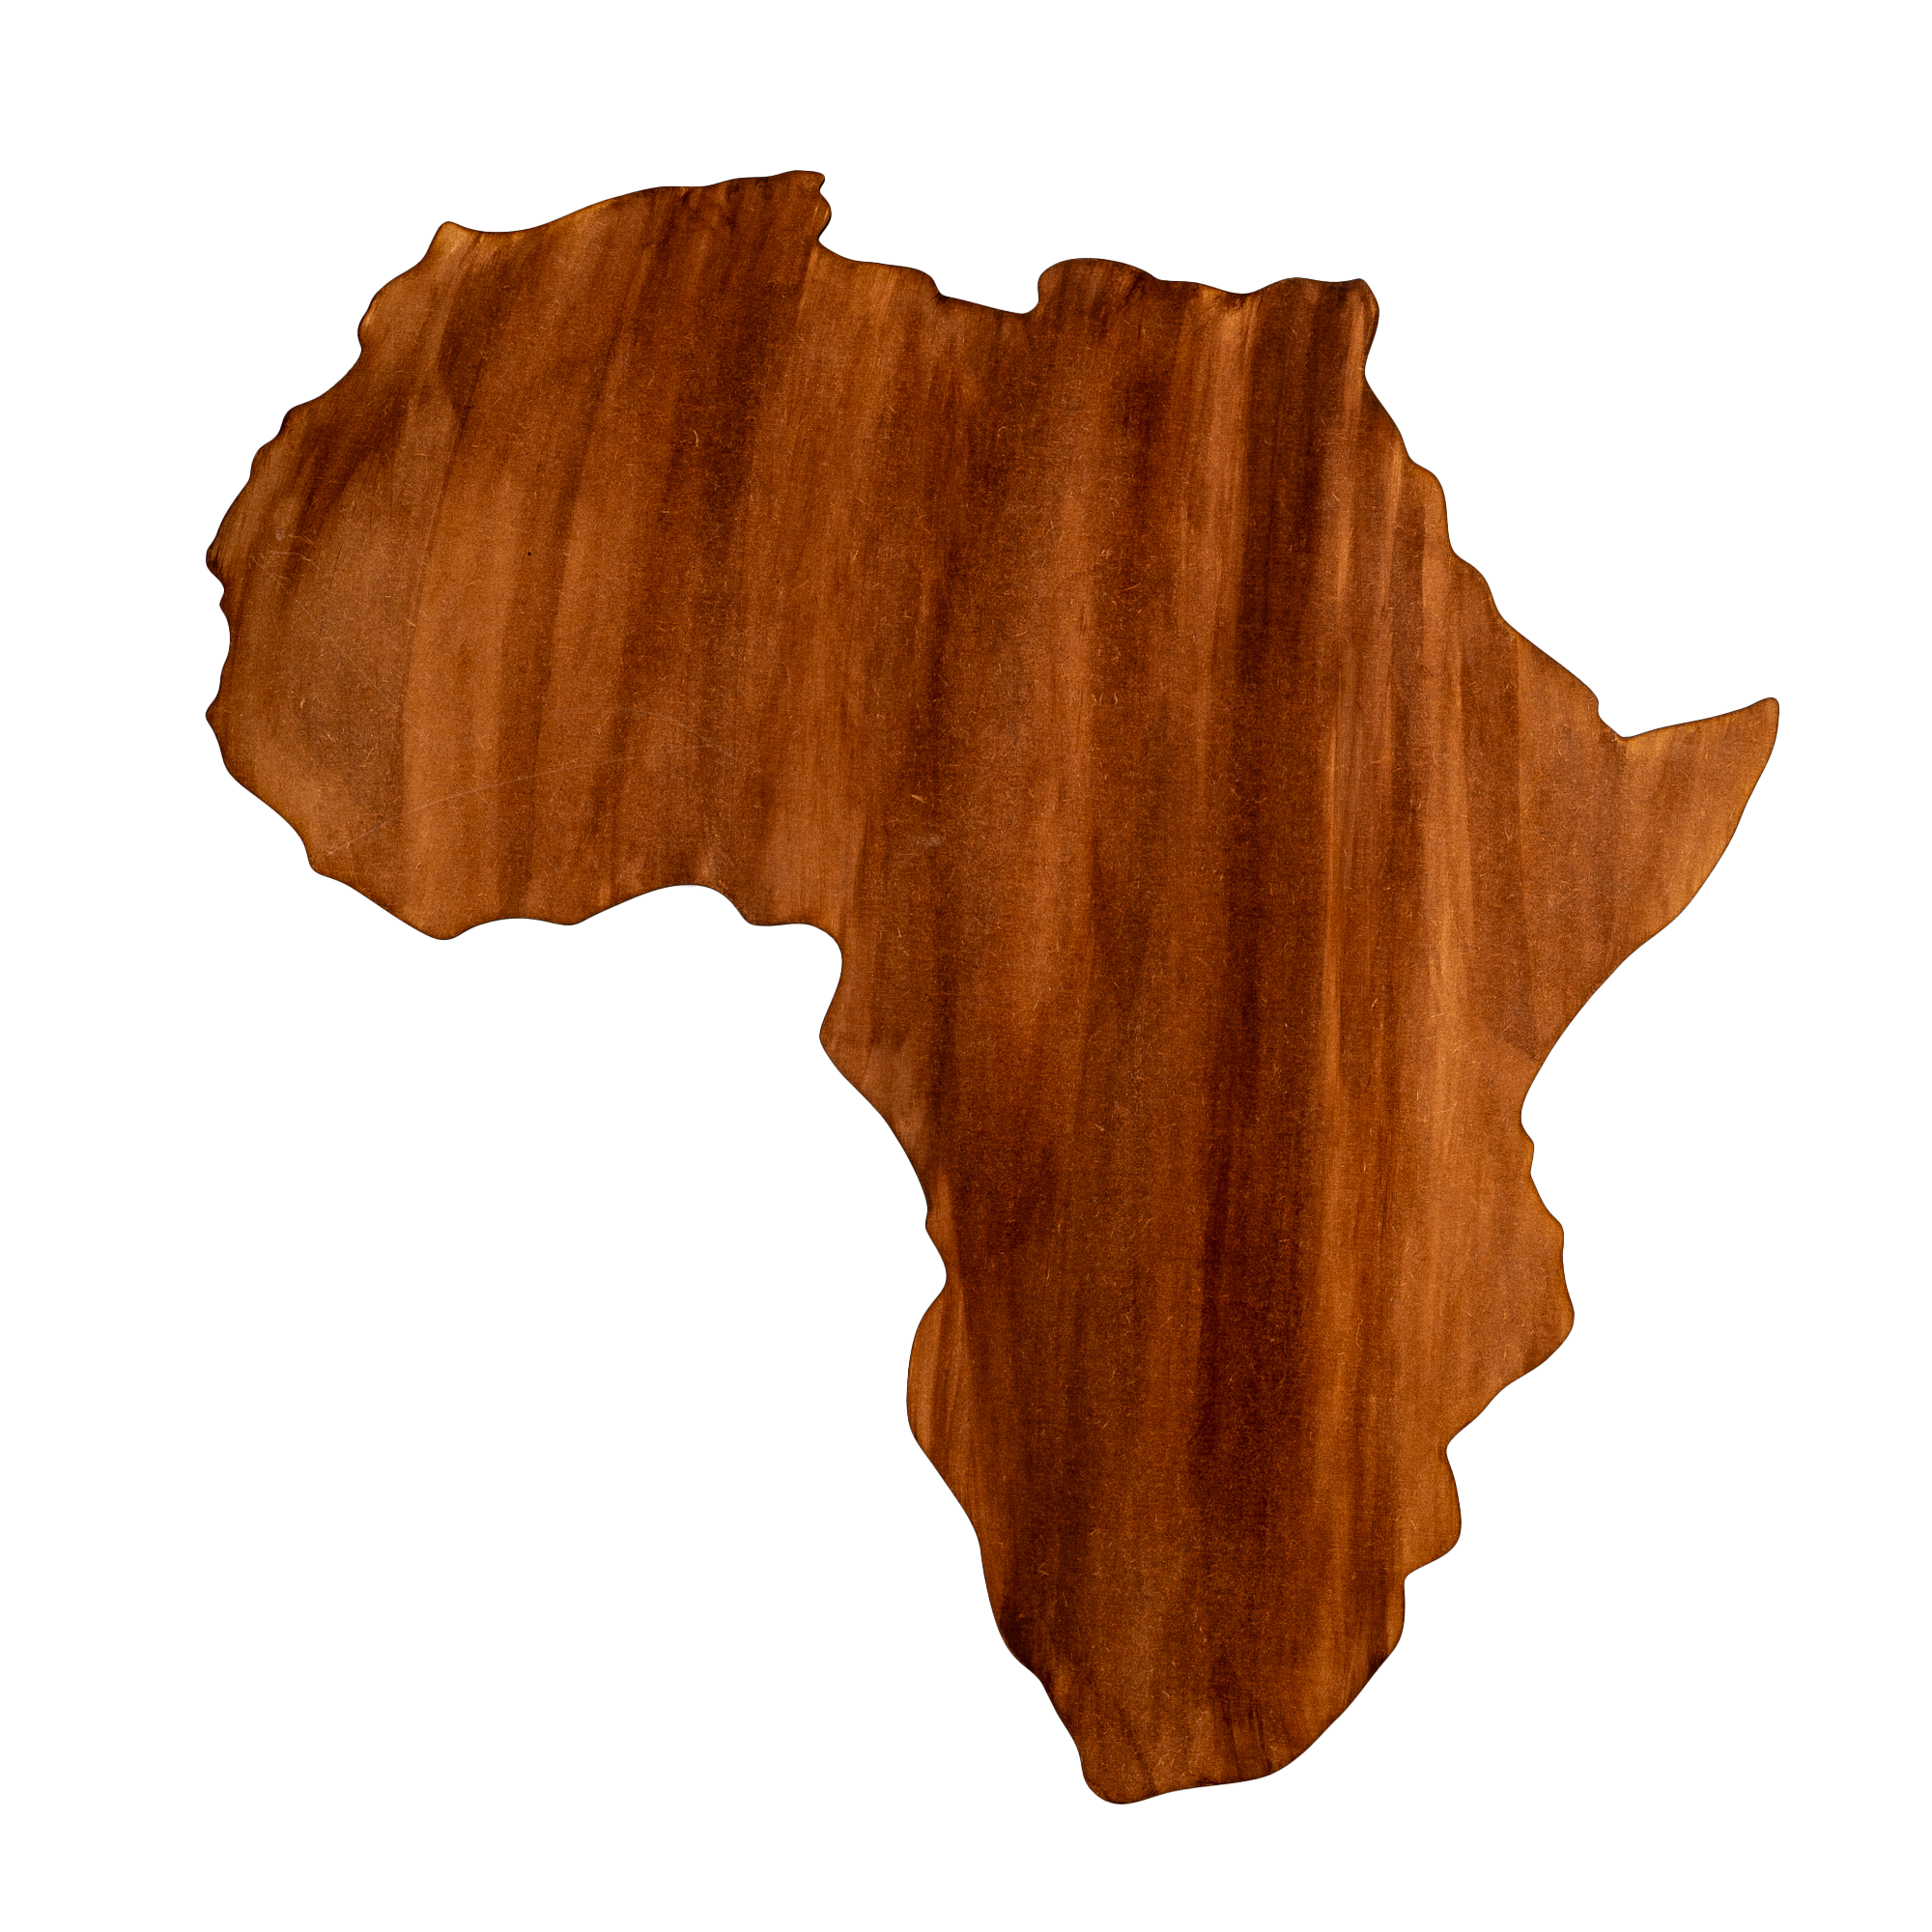 Wooden Laser Cut Africa Map